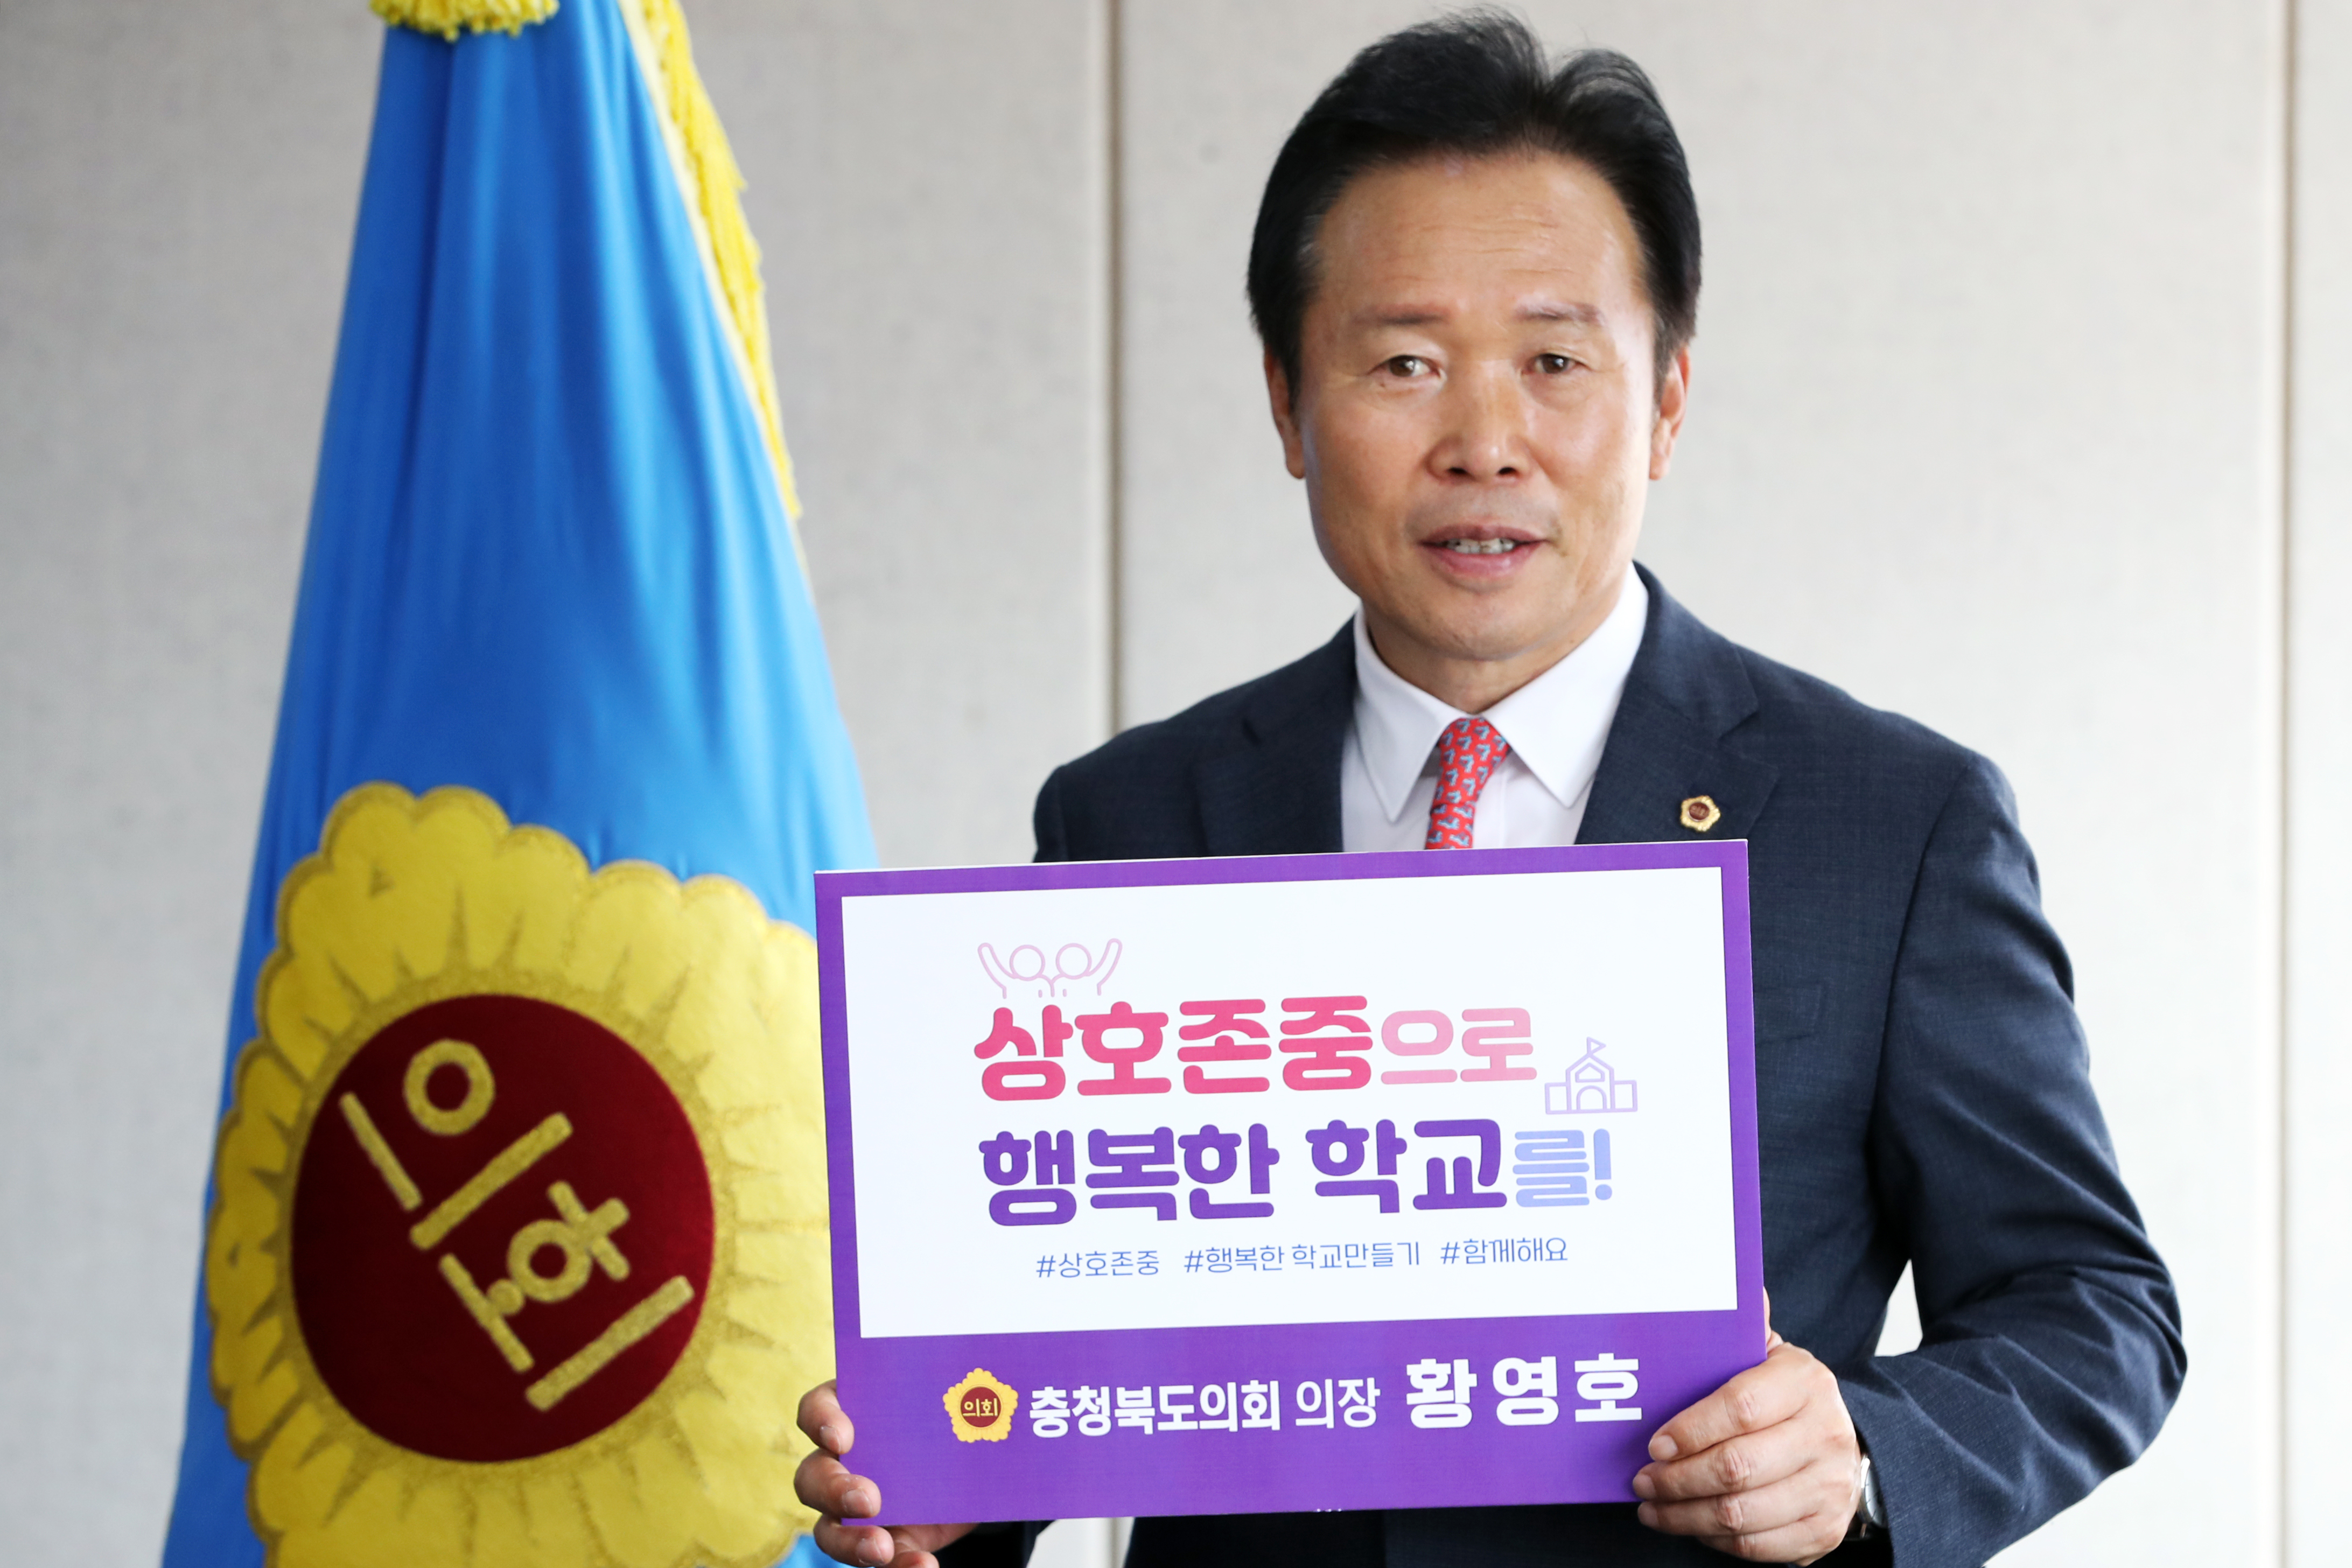 황영호 의장  ‘상호존중 행복한 학교’  캠페인 참여 - 1